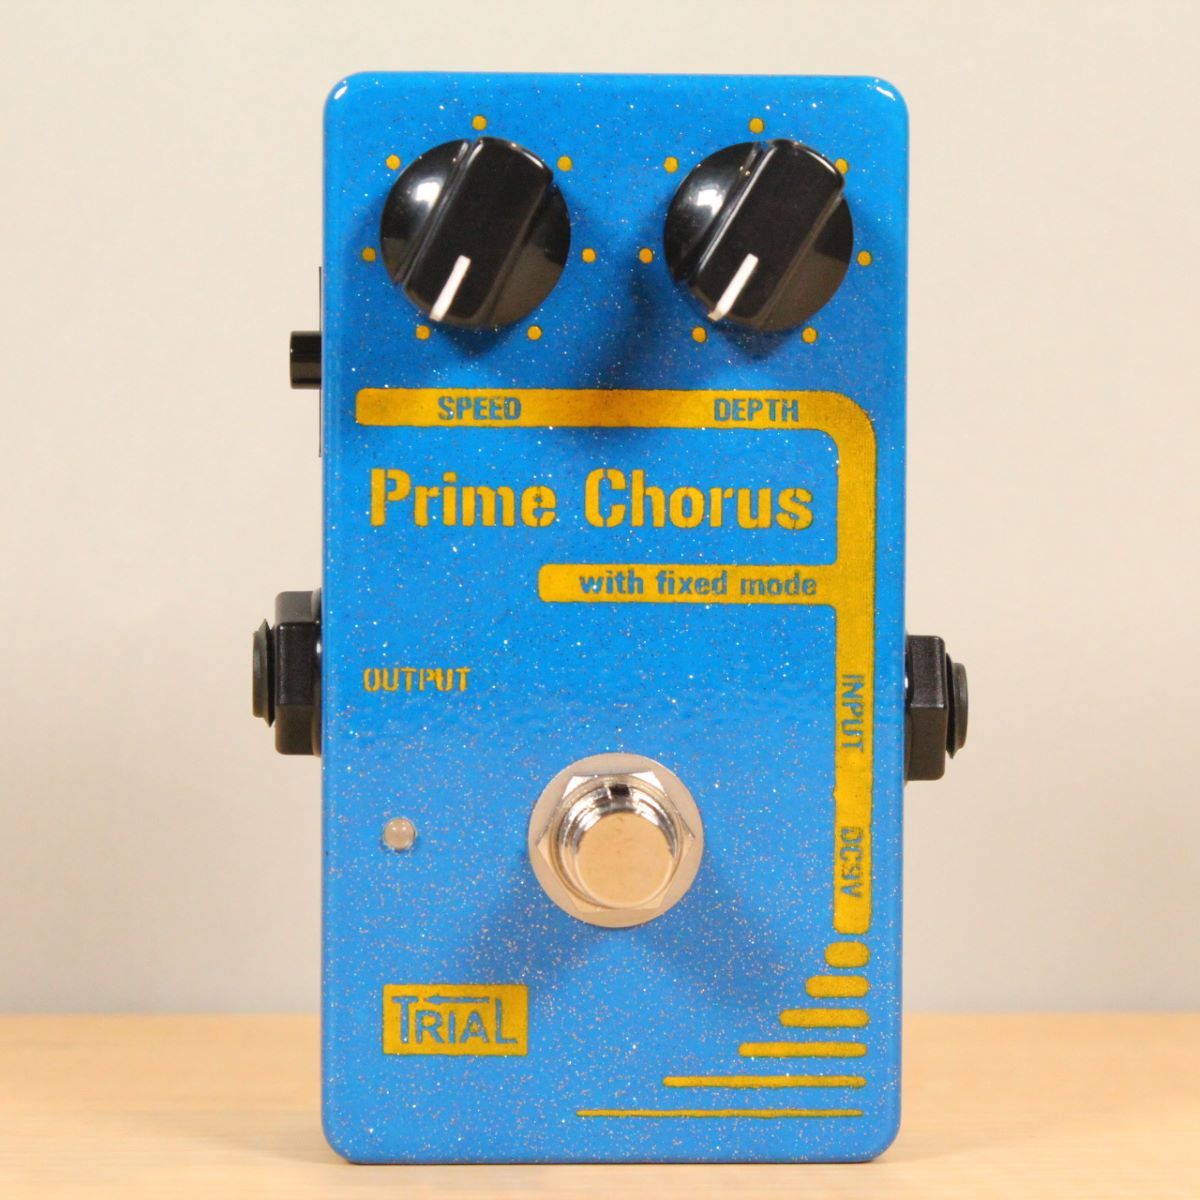 特価ブランド TRIAL Prime Chorus- Prime Chorus ギター